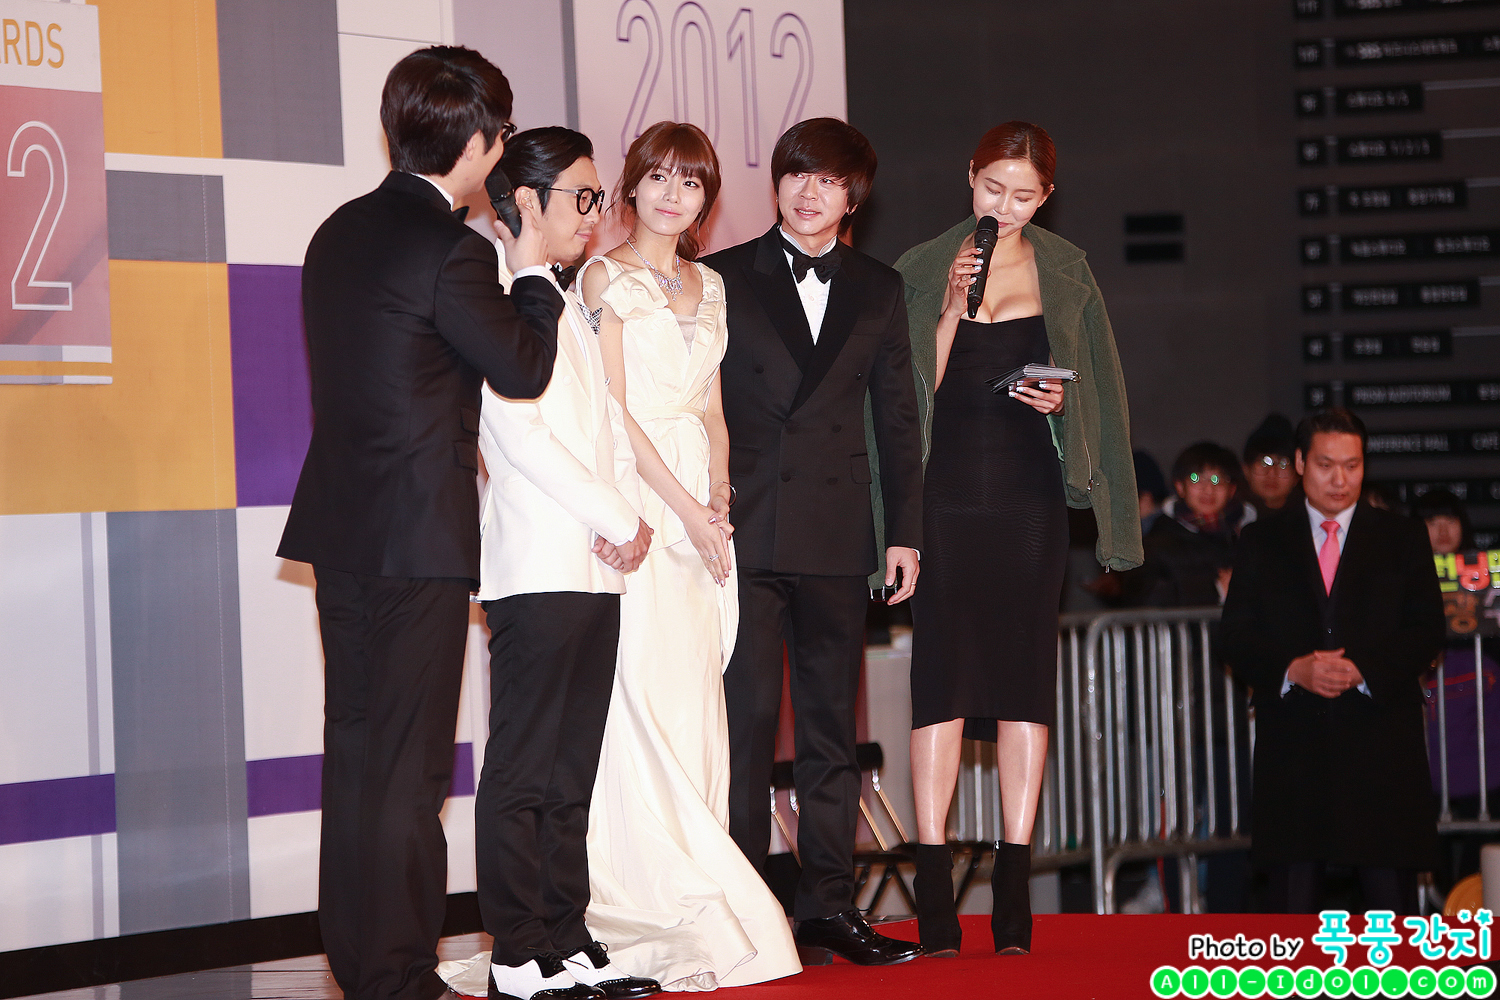 [PIC][30-12-2012]Hình ảnh mới nhất của MC SooYoung tại "2012 SBS Entertainment Awards" tối nay 1820294A50E06E6531EEC7